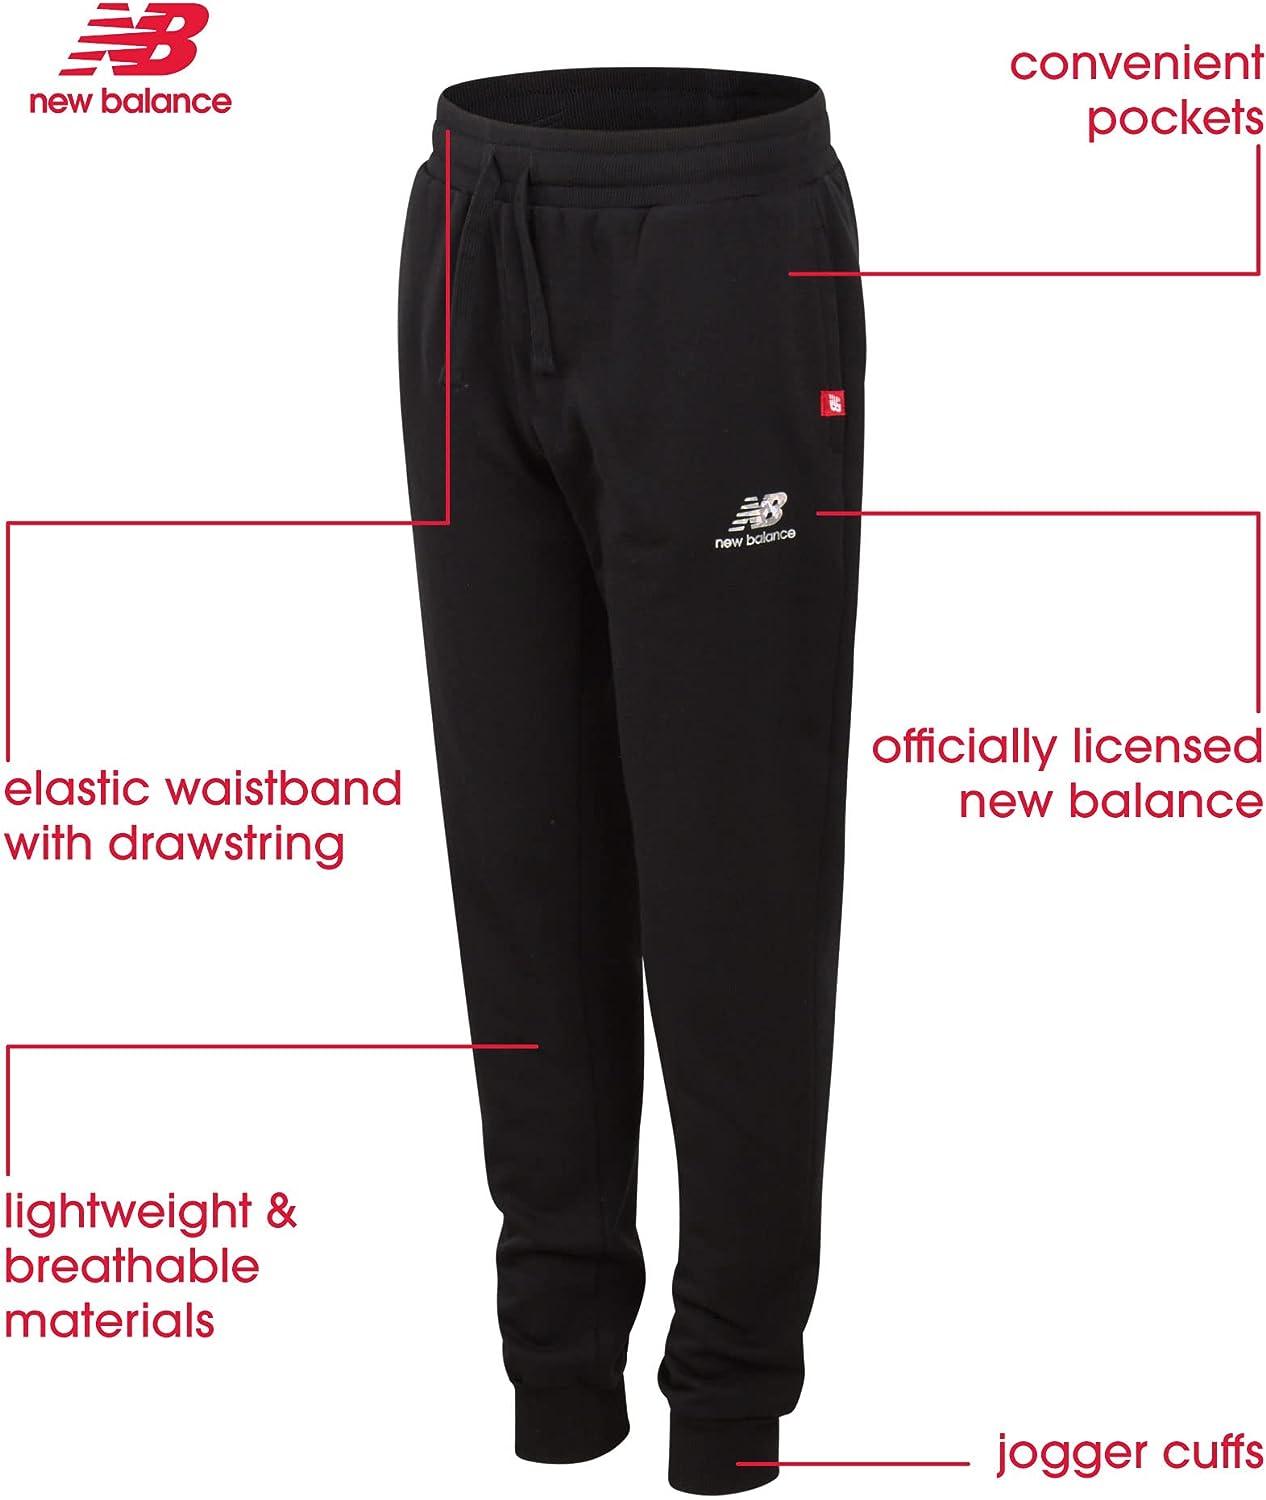 Women's Jogging Pants Size 16, Jogging Bottoms for Women